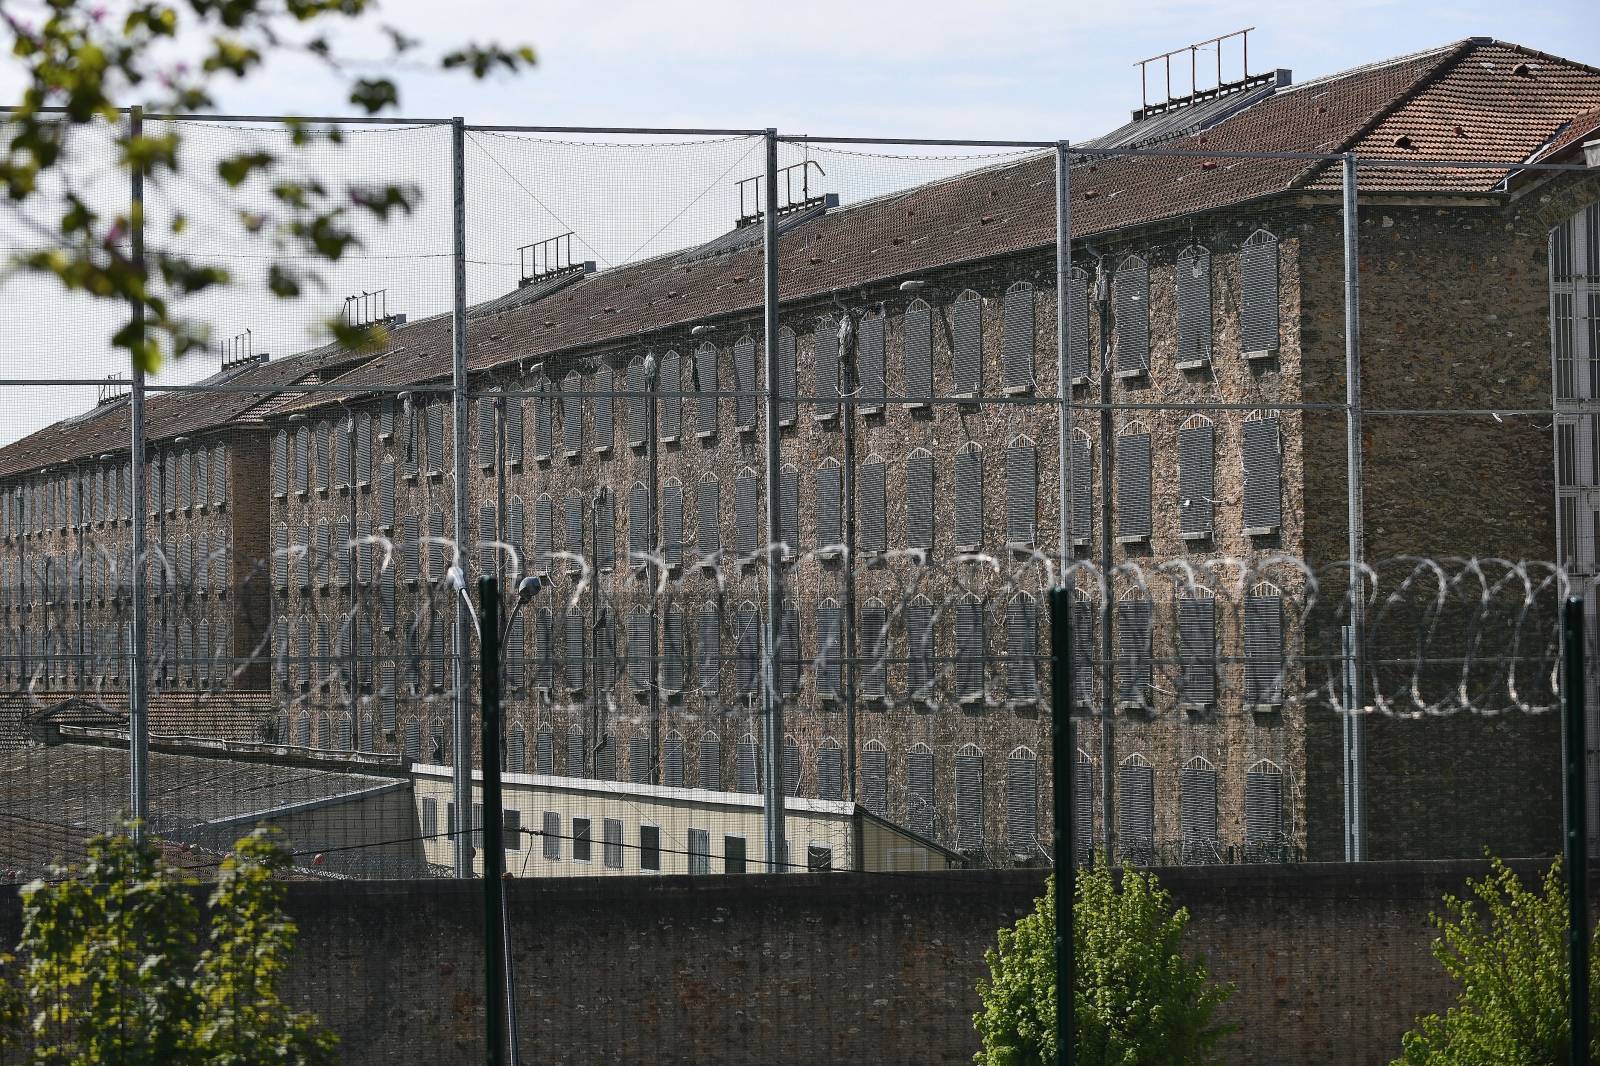 La Santé Prison And Fresnes Prison - Paris